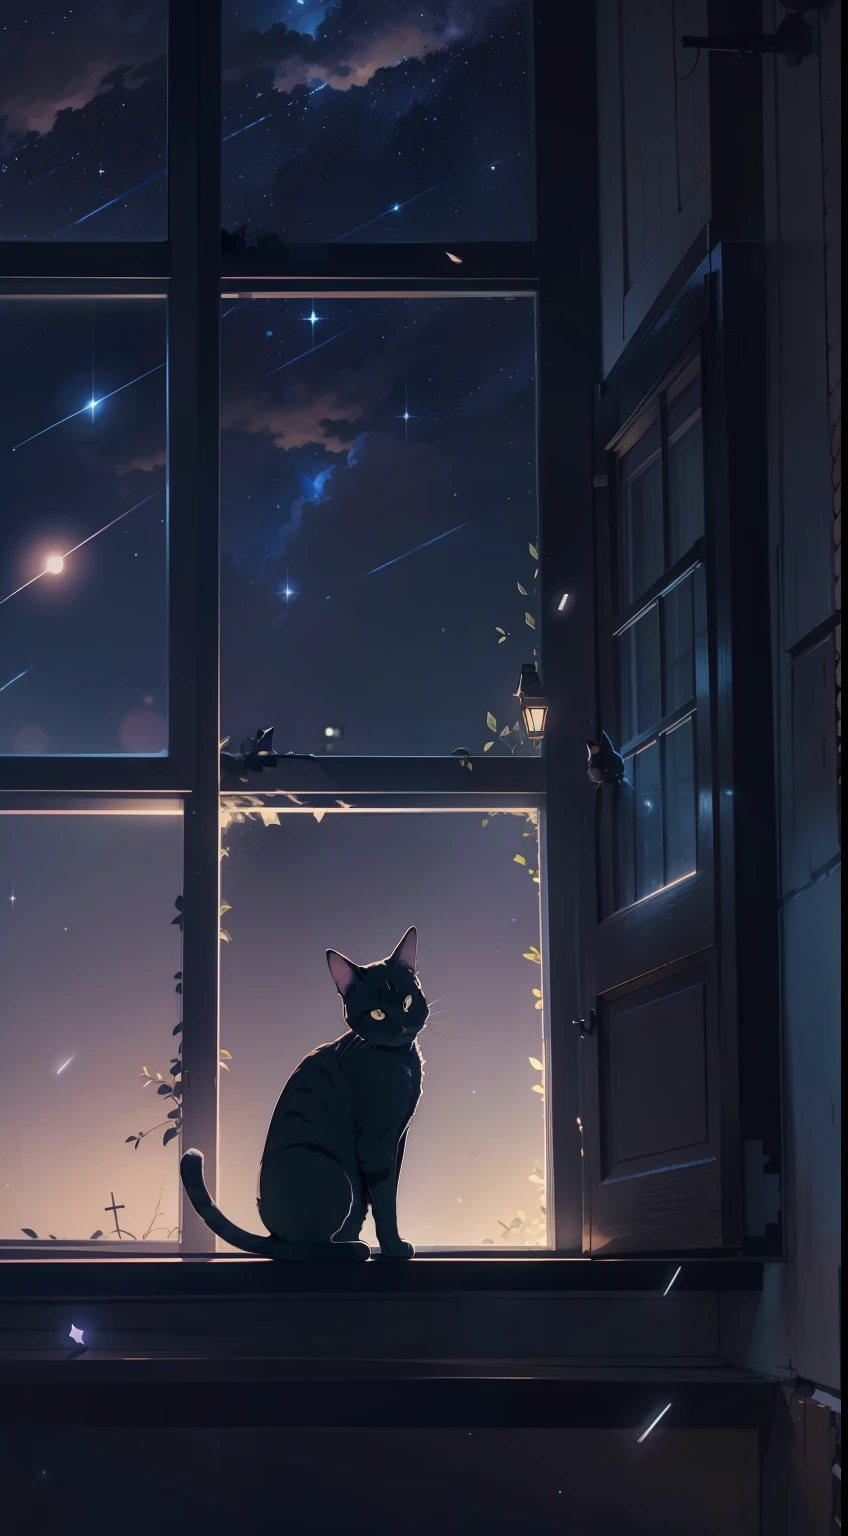 Un pequeño gato agazapado en el alféizar de la ventana., estrellas fugaces, El cielo nocturno, estilo animado, chiaroscuro, iluminación cinematográfica, contraluz, silueta, desde abajo, 8k, súper detalle, preciso, mejor calidad, Detalles altos